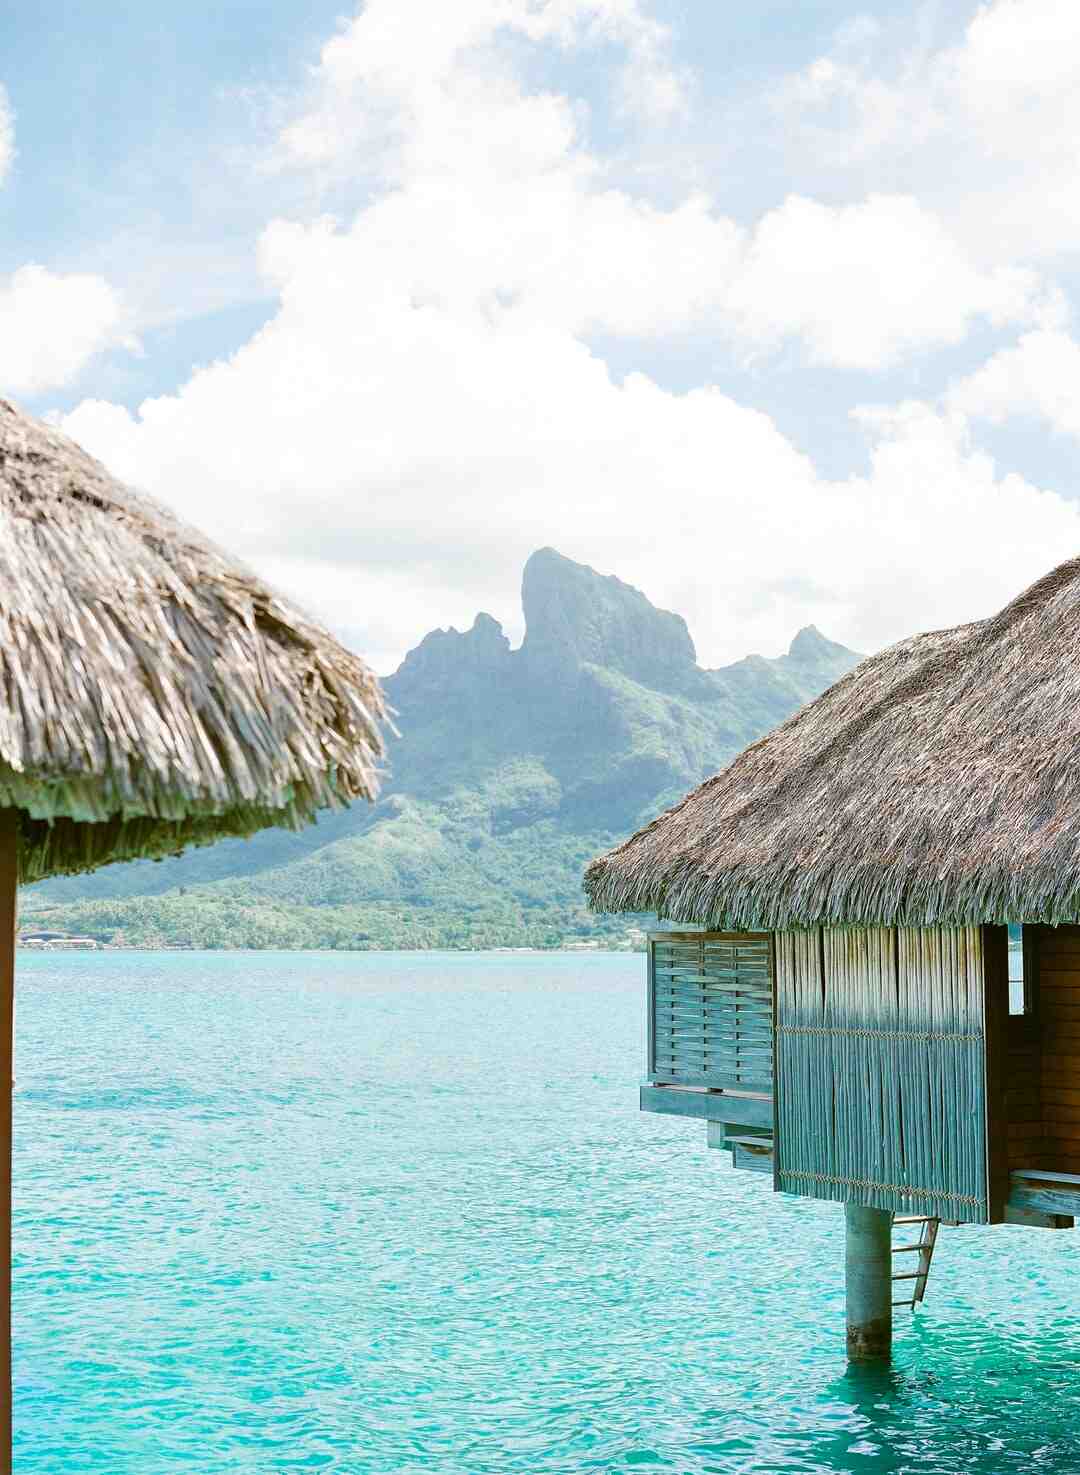 ¿Cuánto cuesta un billete de avión a Tahití?